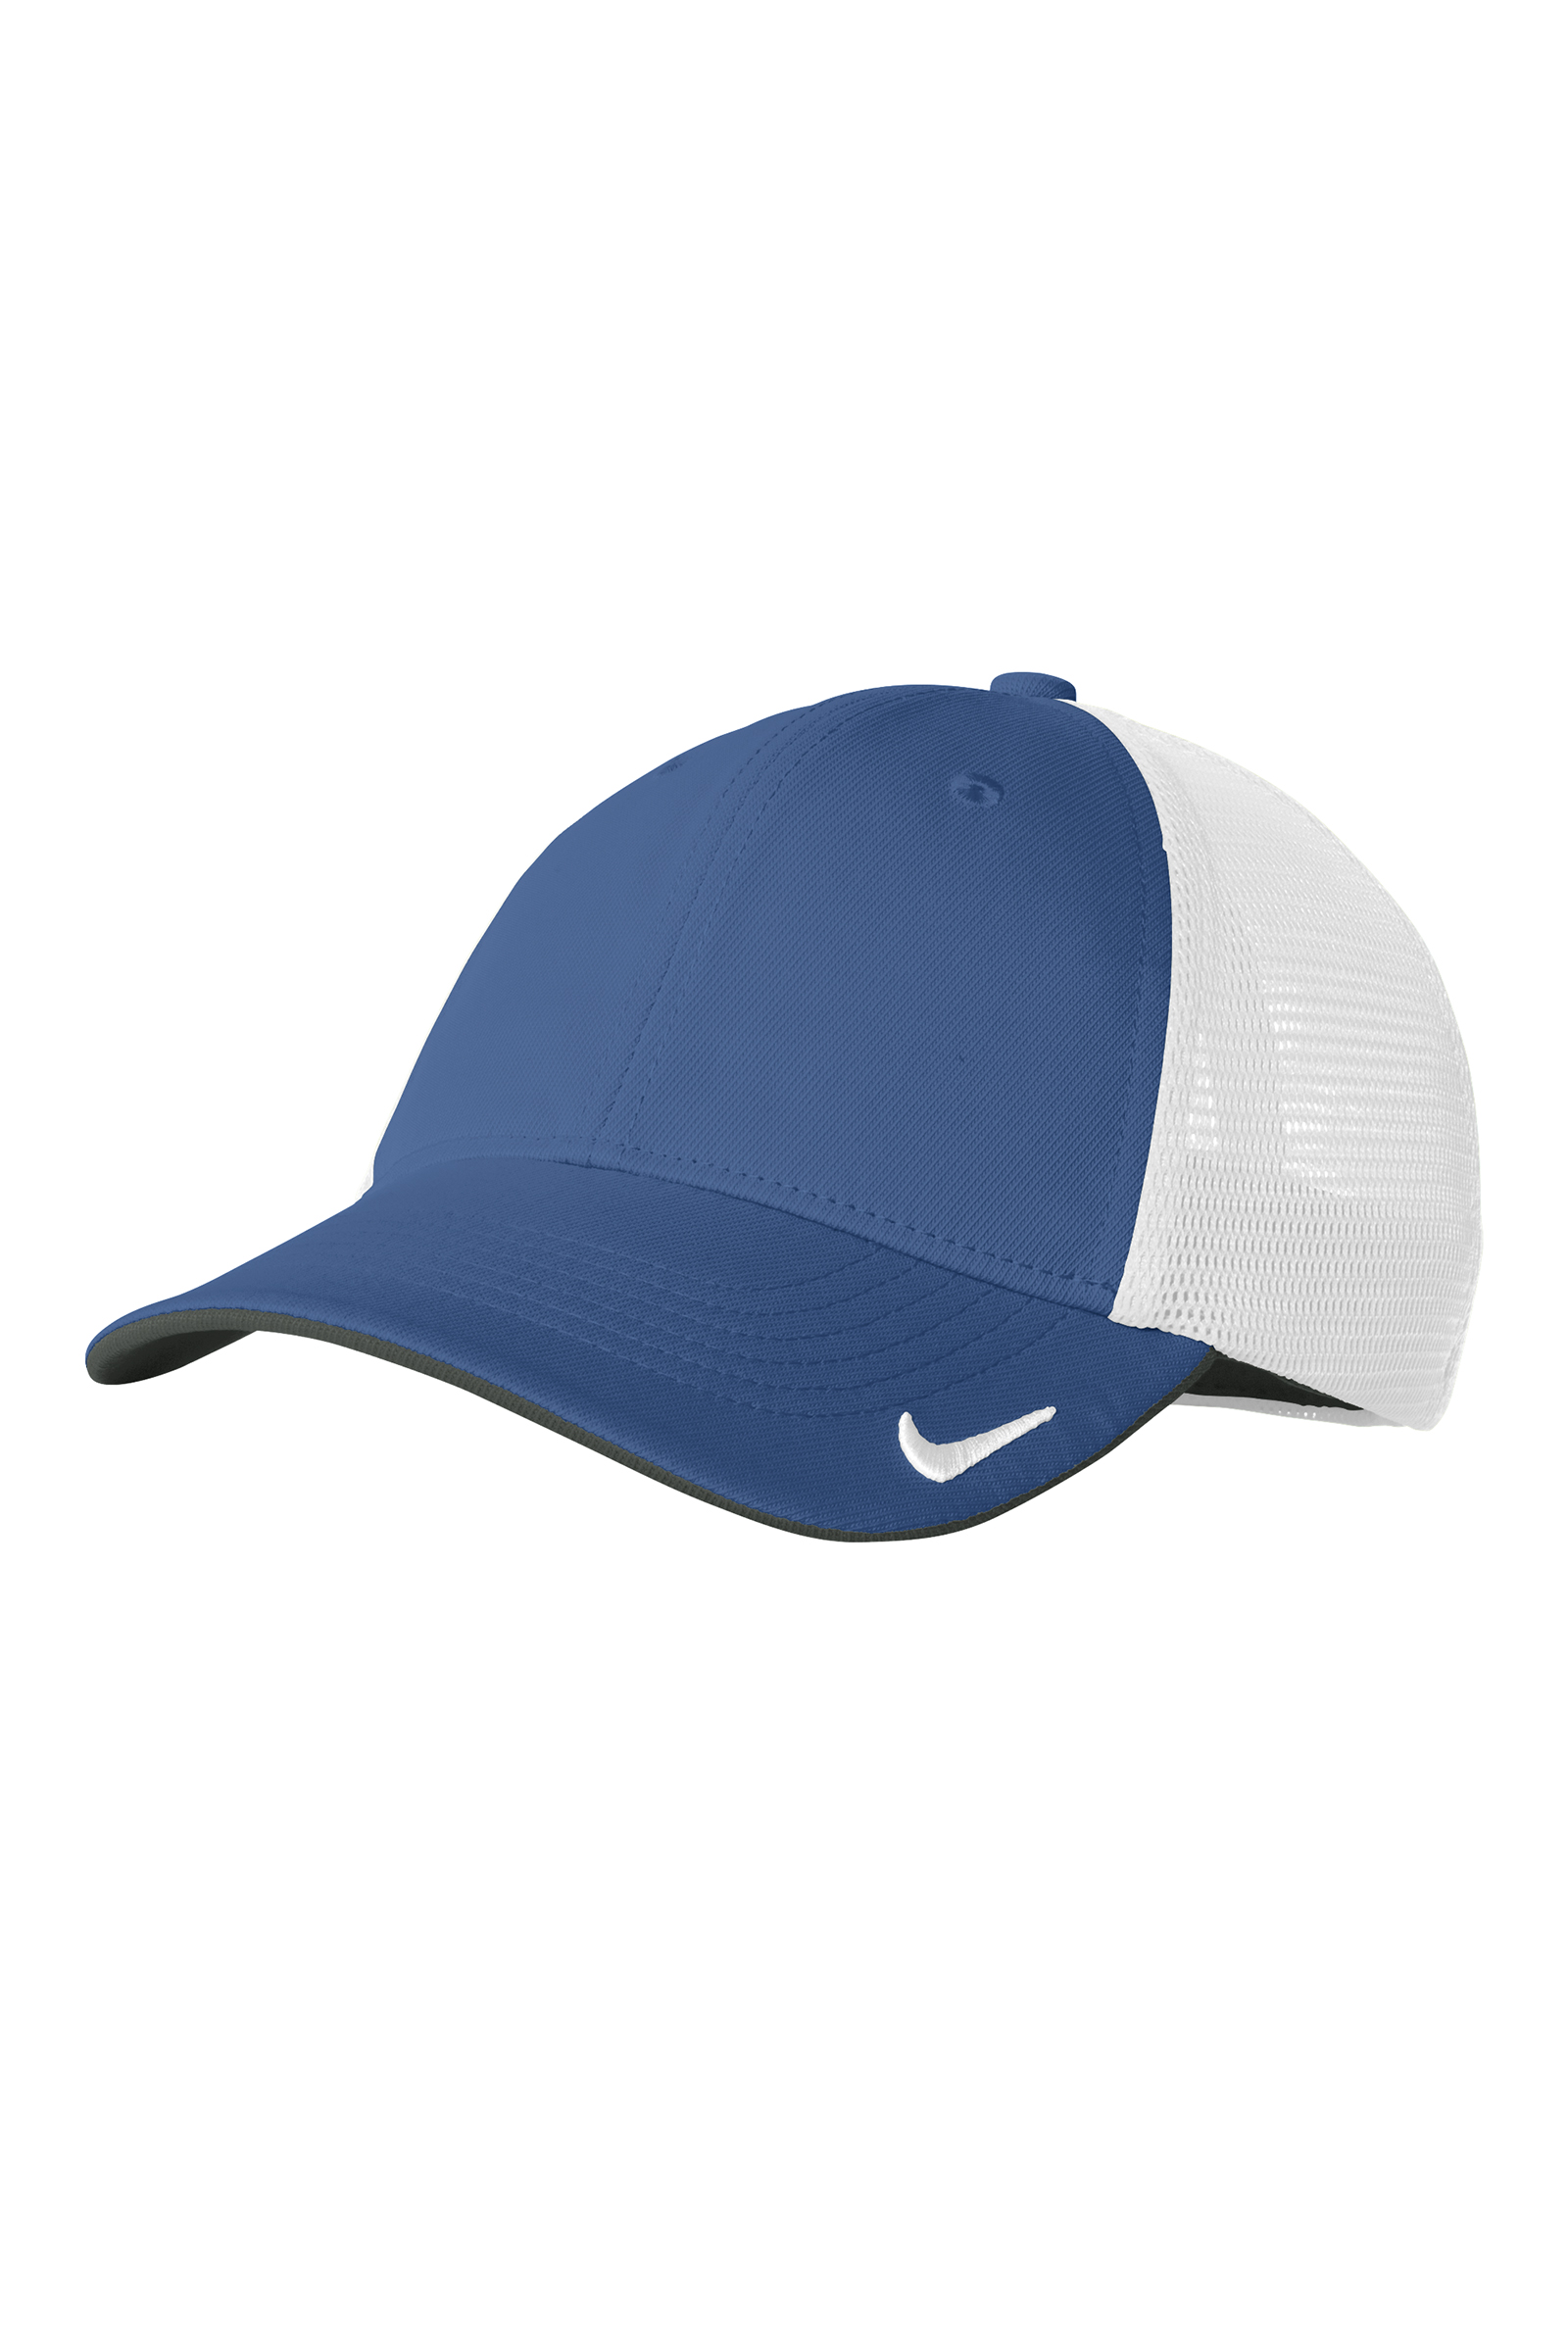 Nike Golf  Embroidered Mesh Back Cap II